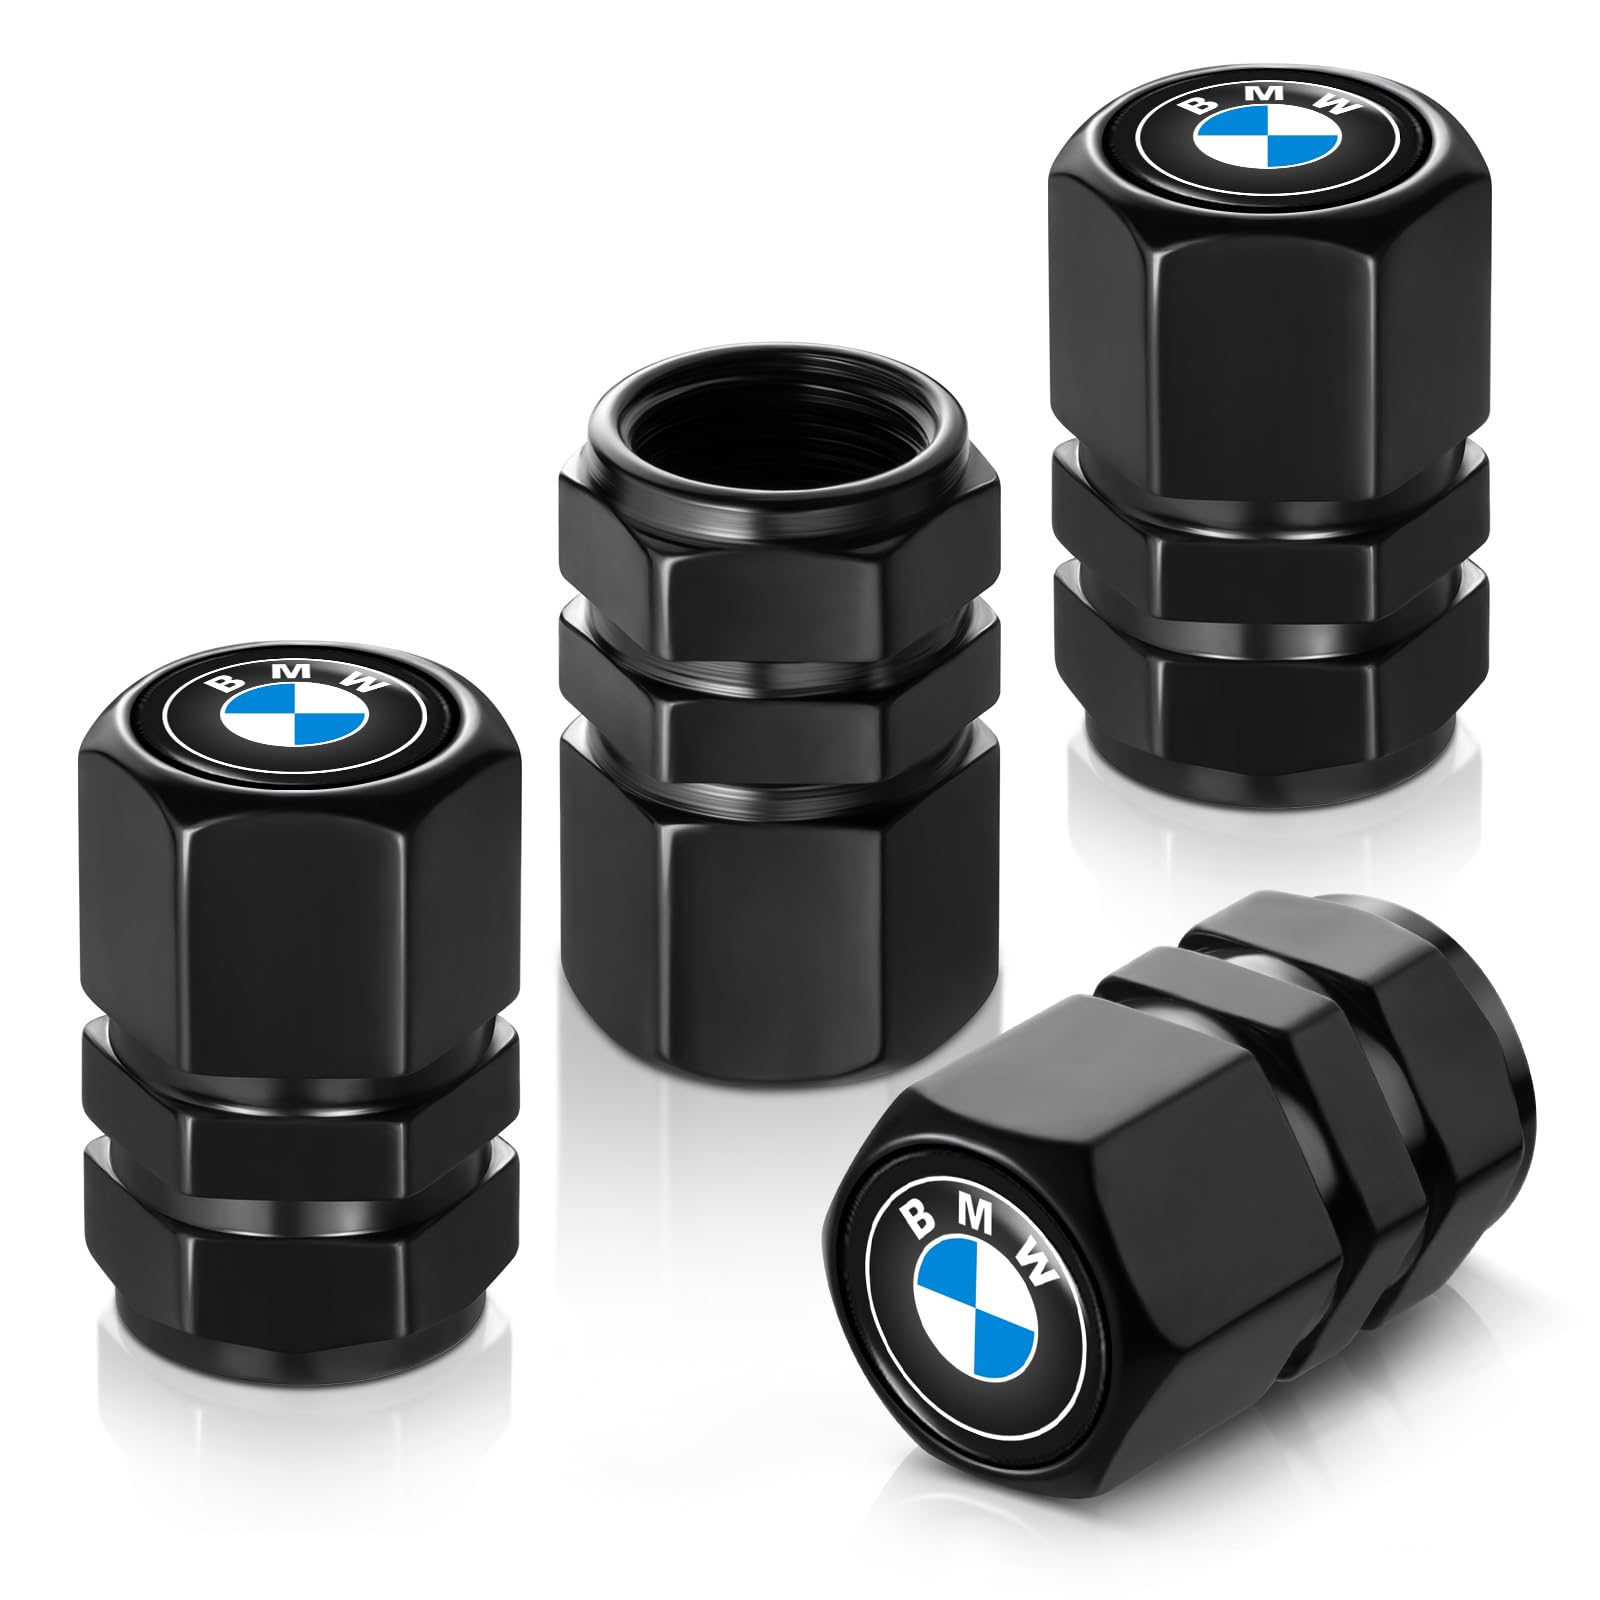 Nialliaz Reifenventilkappen für BMW M 3 5 7 X1 X3 M3 M5 X1 X5 X6 Serie, Metall Auto Luftkappen Zubehör 4 Stück schwarz von Nialliaz